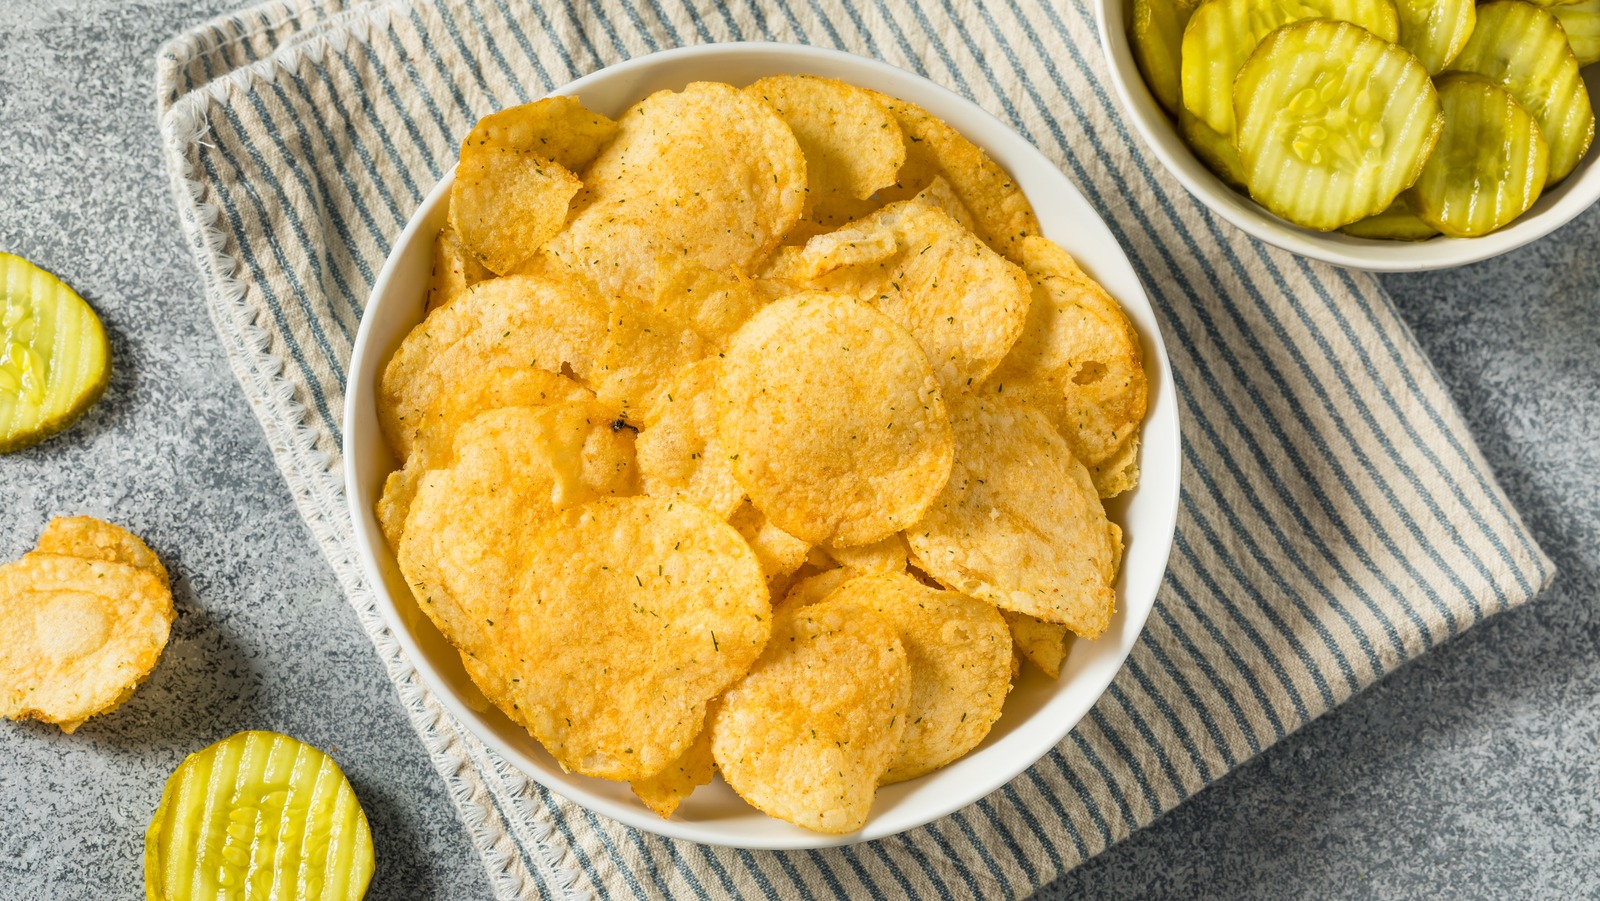 Snack Food Machine Supplier Best Potato Chips Machine for Sale